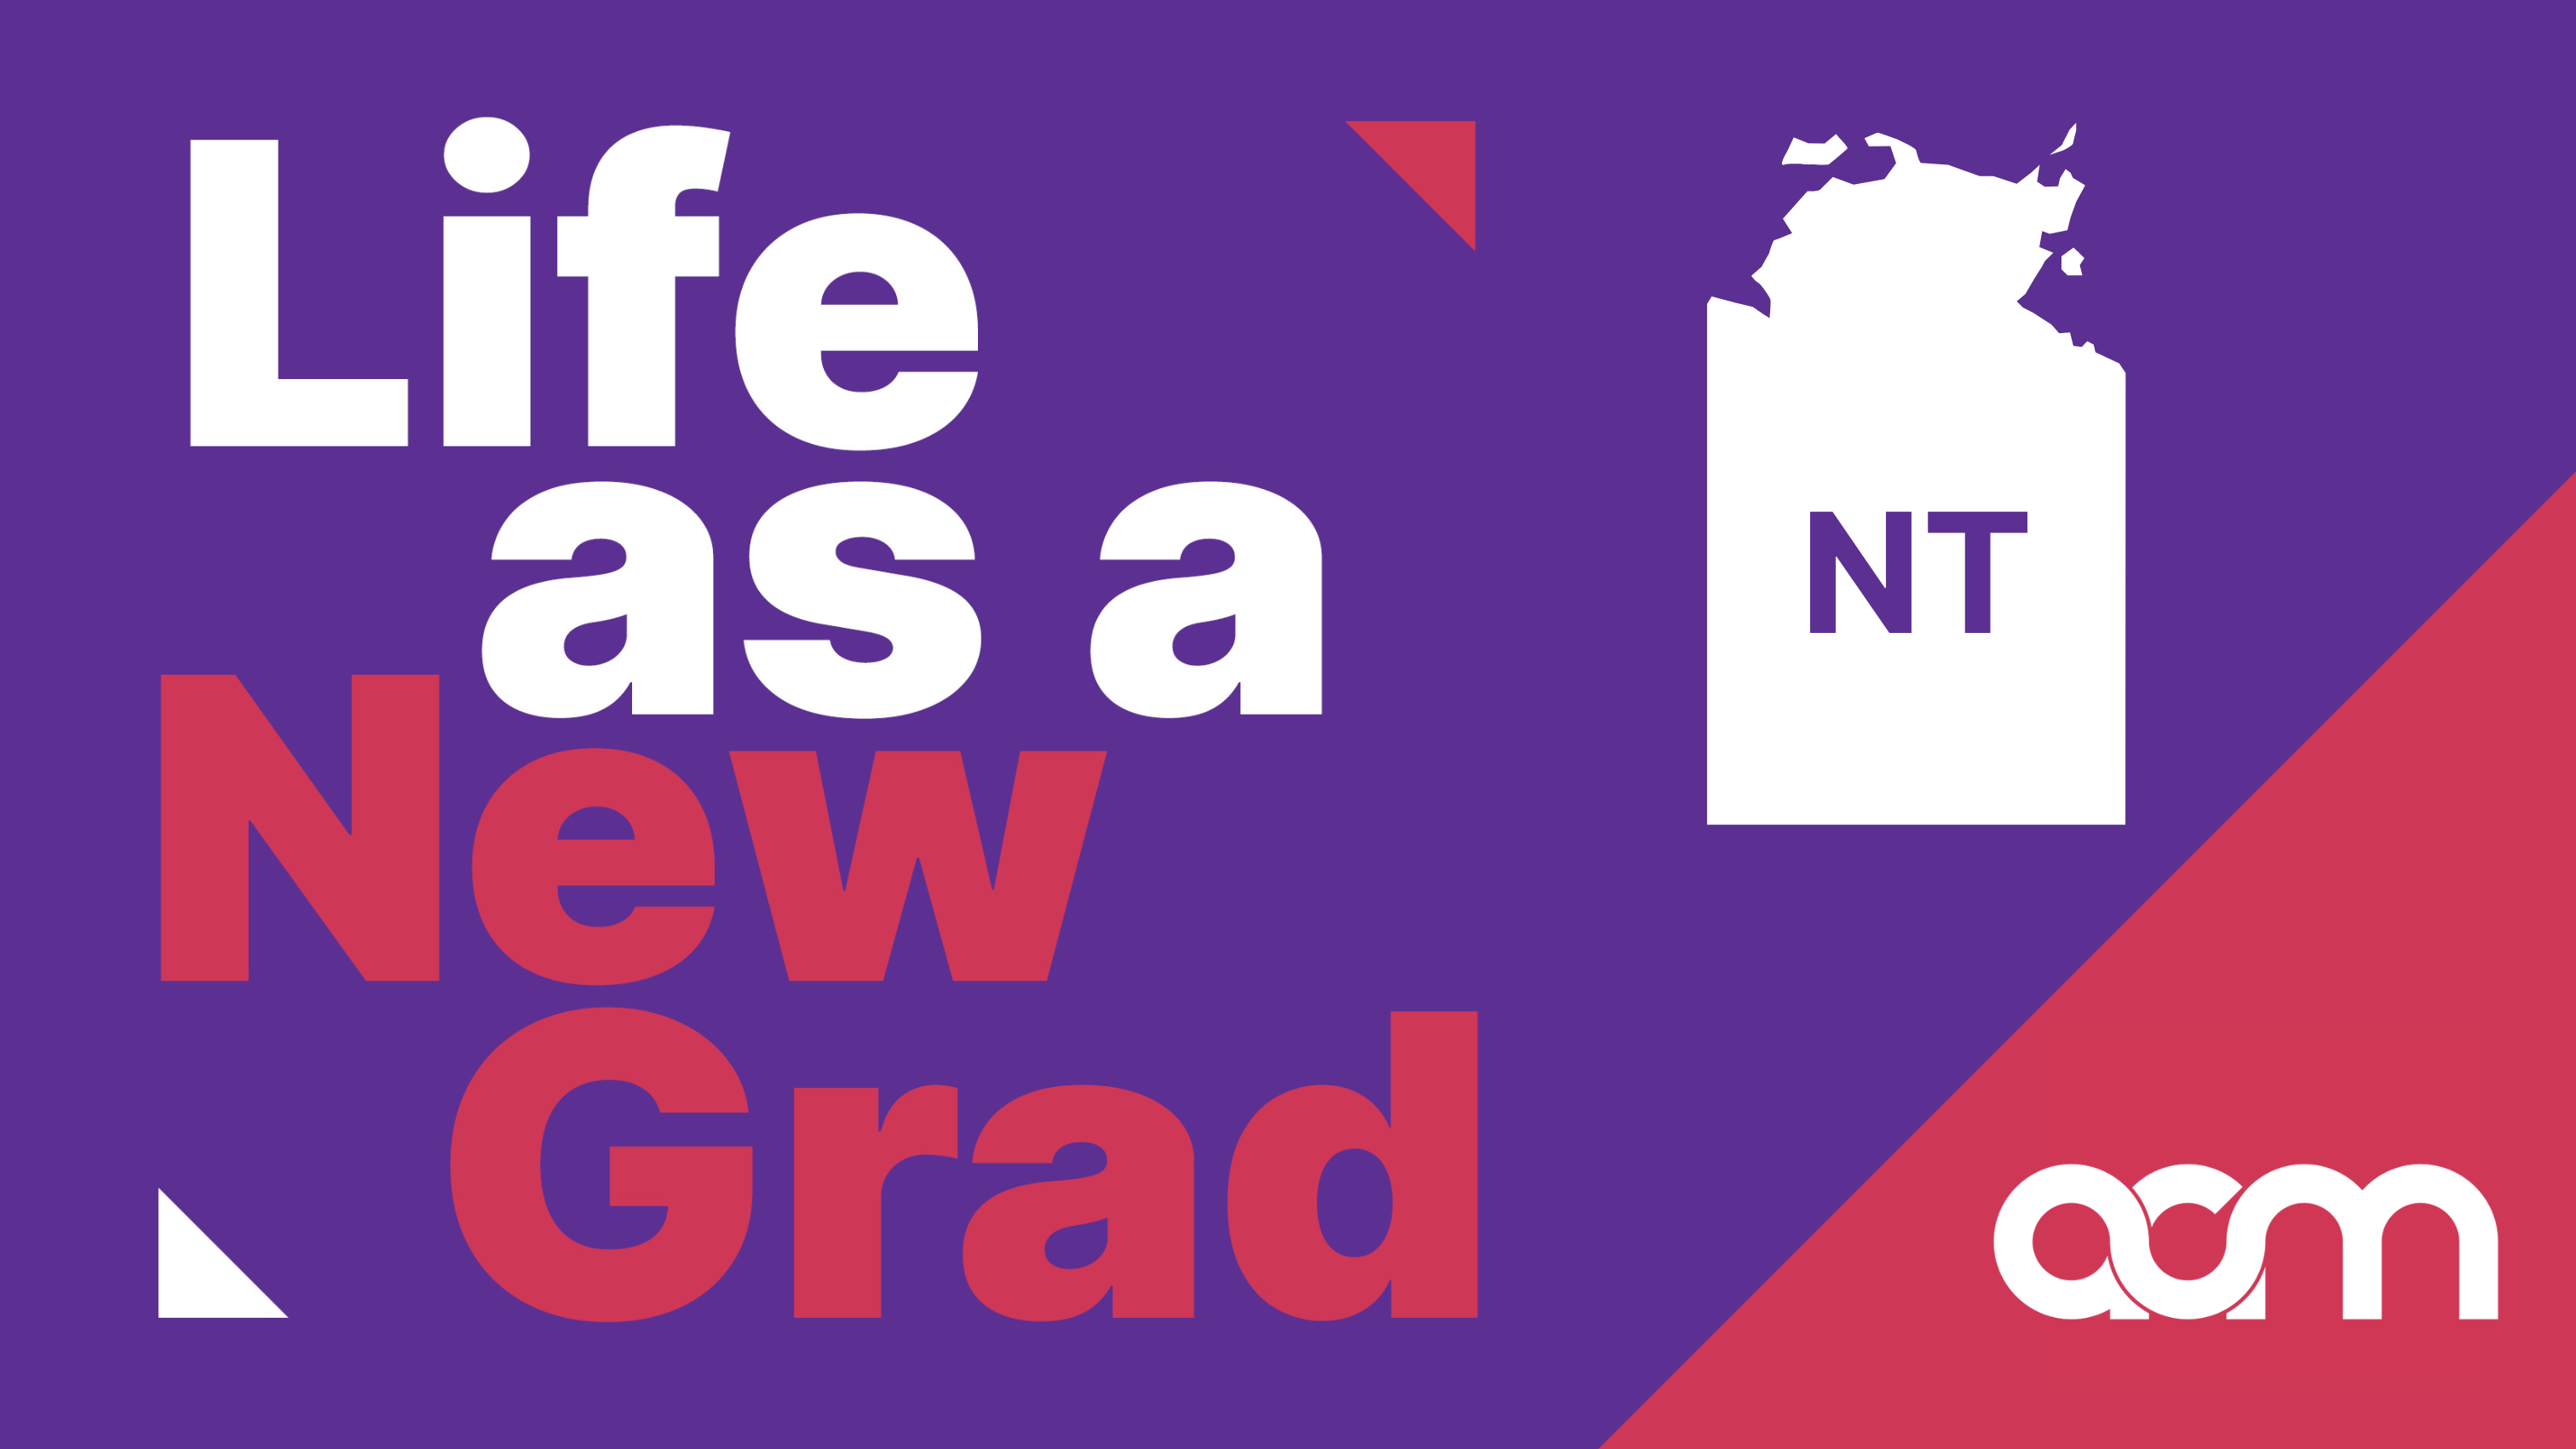 Life as a New Grad NT